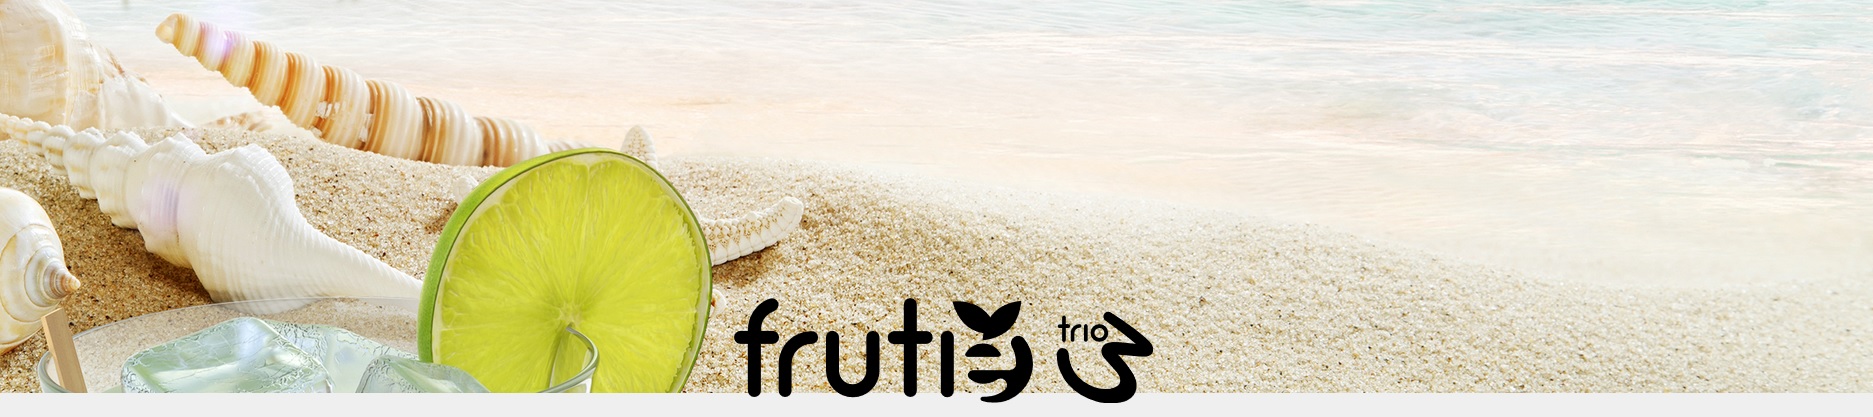 frutie-trio-prichute-shake-and-vape-120ml